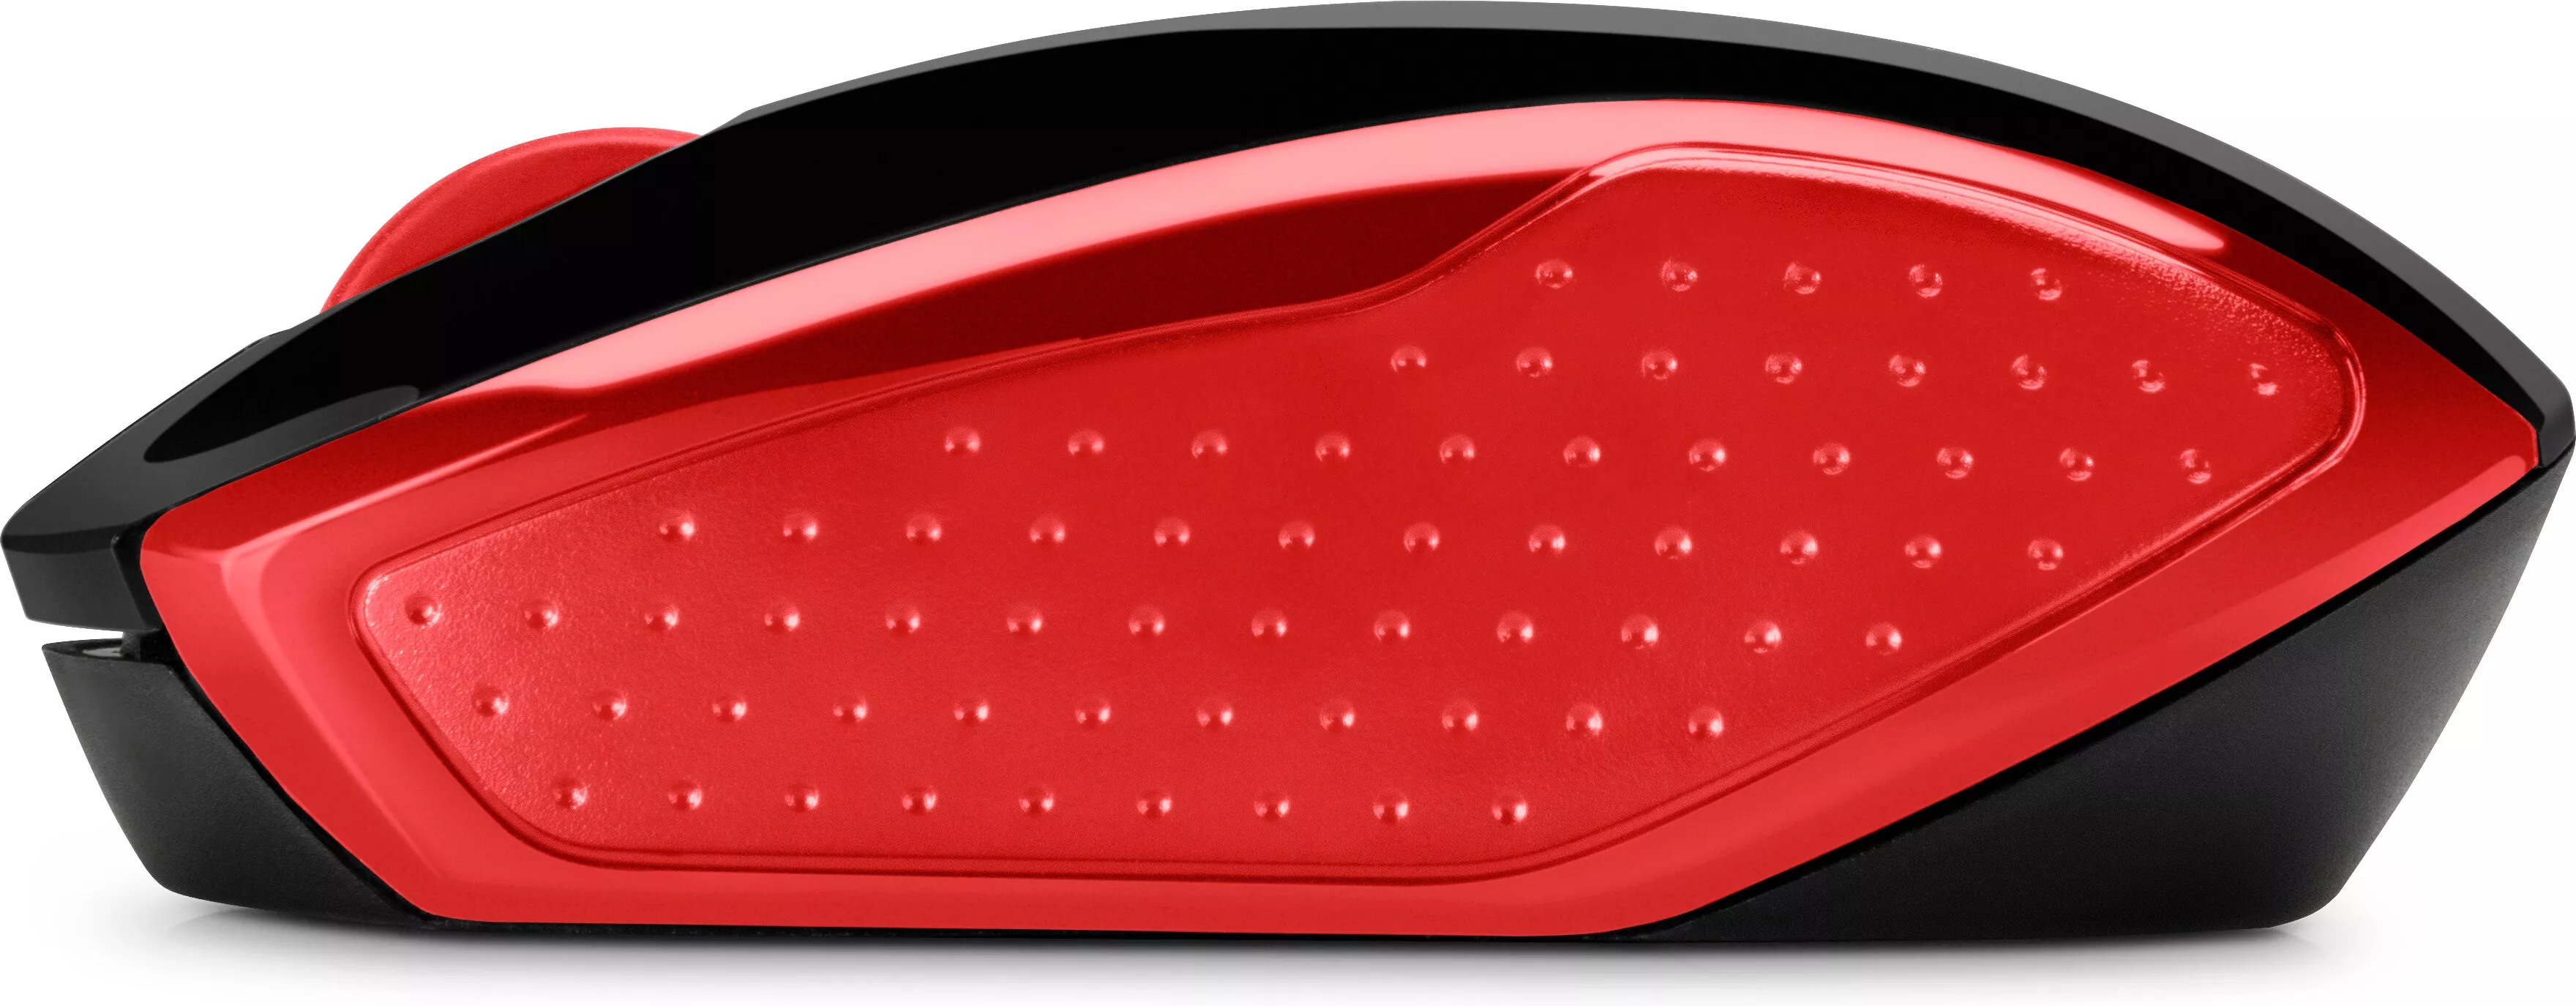 Vente HP Wireless Mouse 200 Empres Red HP au meilleur prix - visuel 8